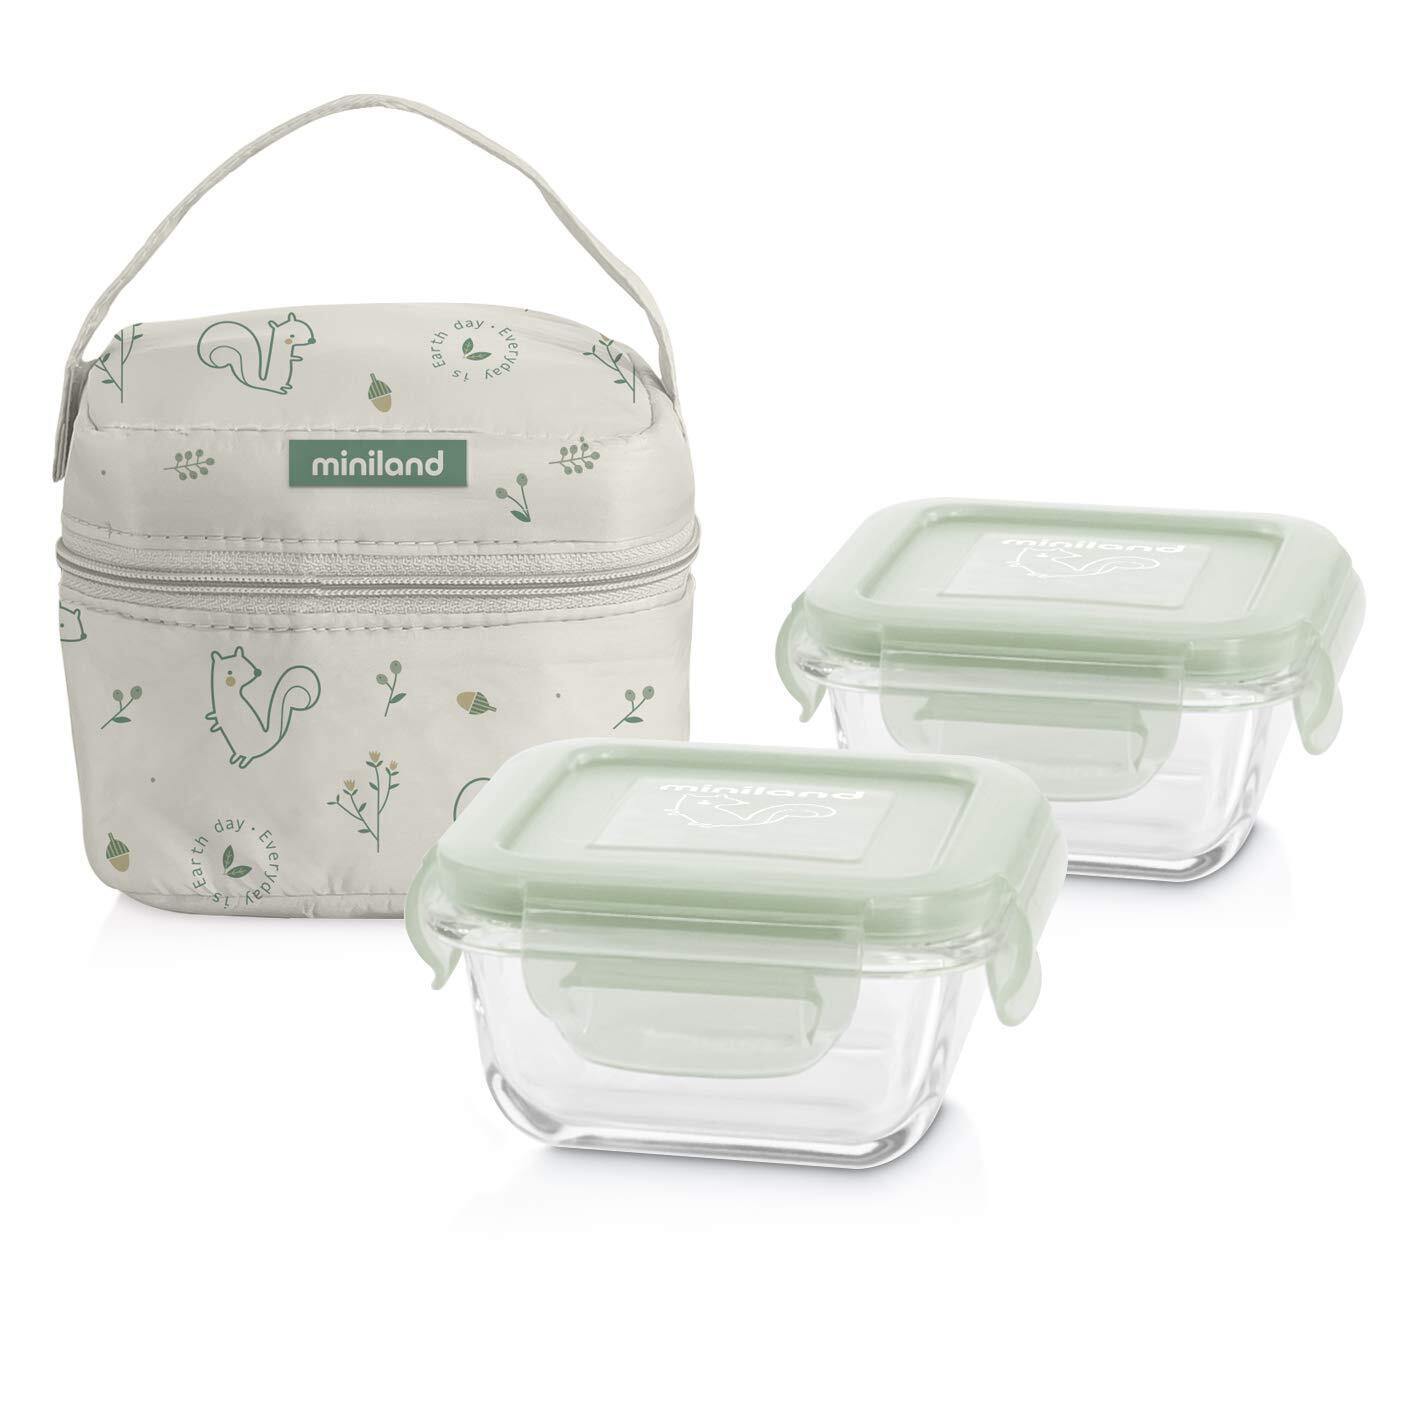 Miniland pack-2-go naturSquare met isolerende zak groen wit